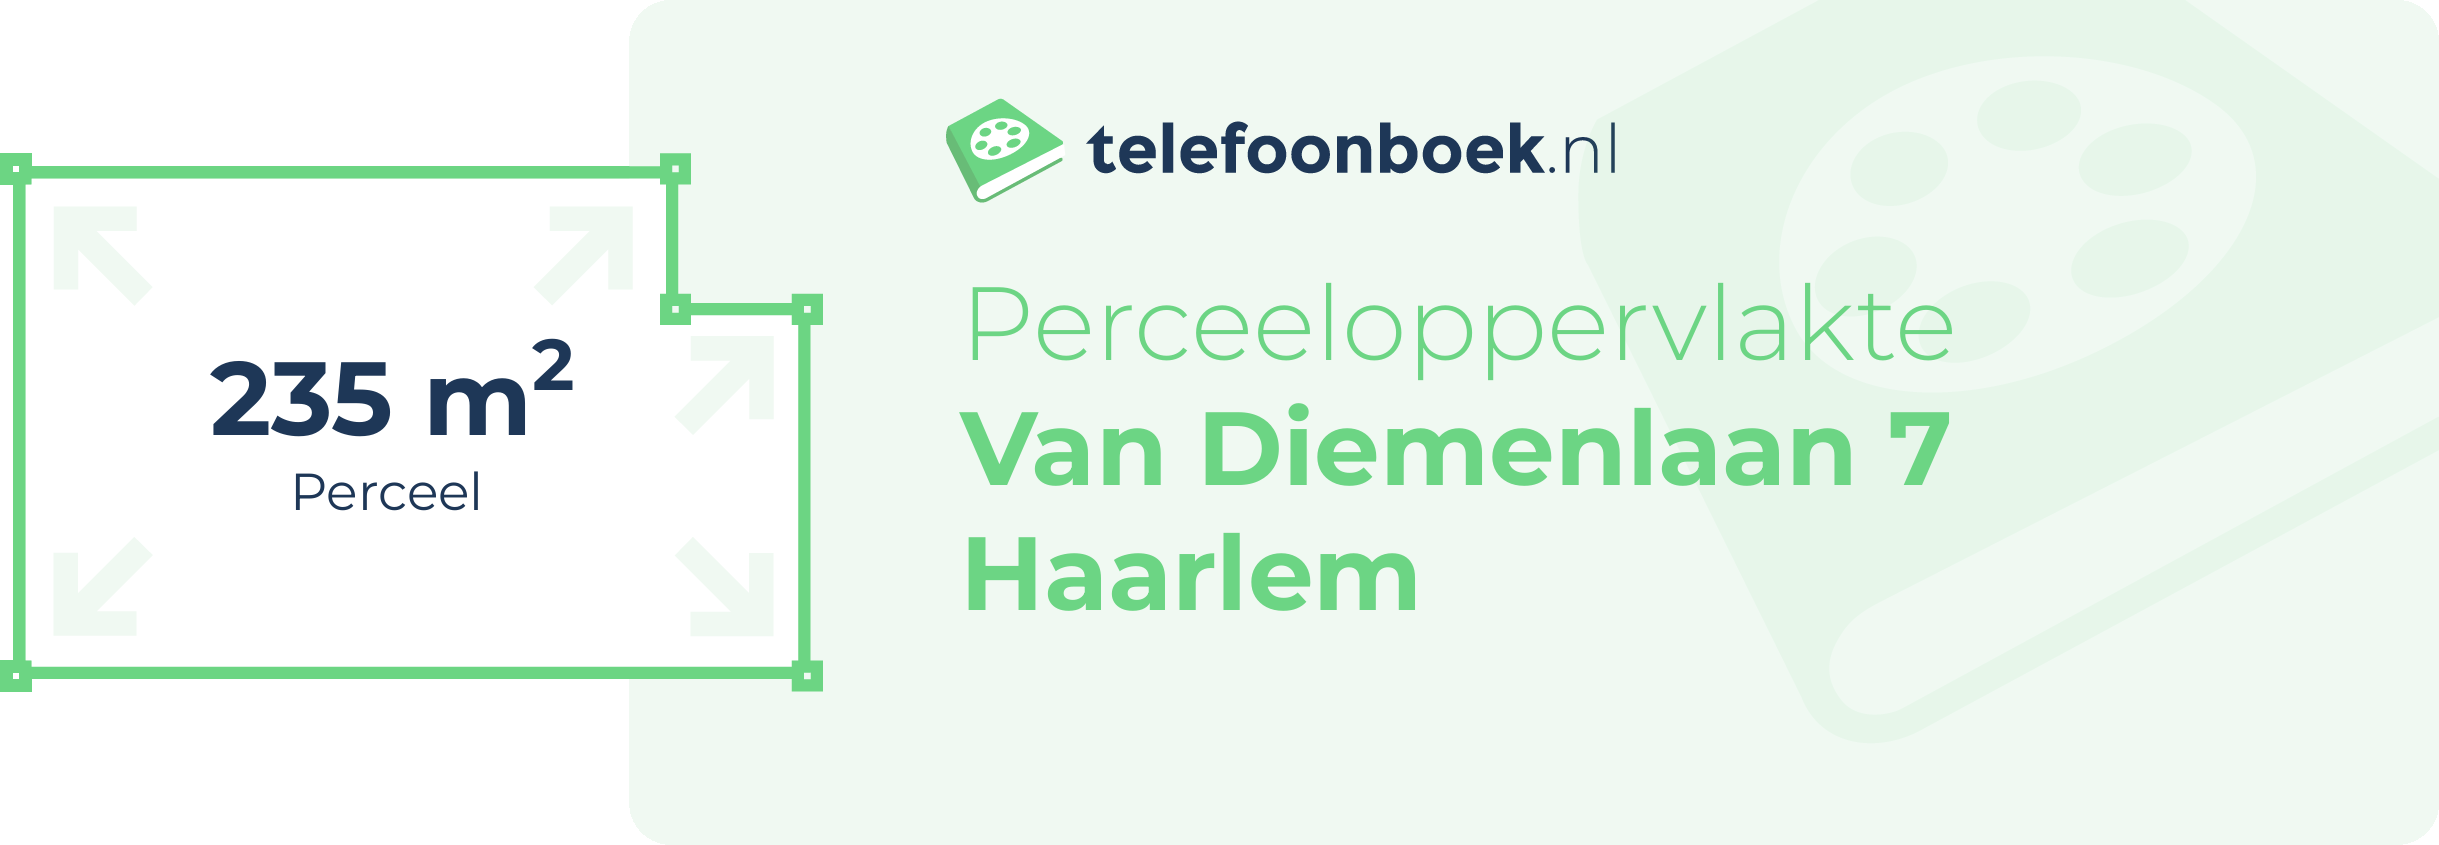 Perceeloppervlakte Van Diemenlaan 7 Haarlem